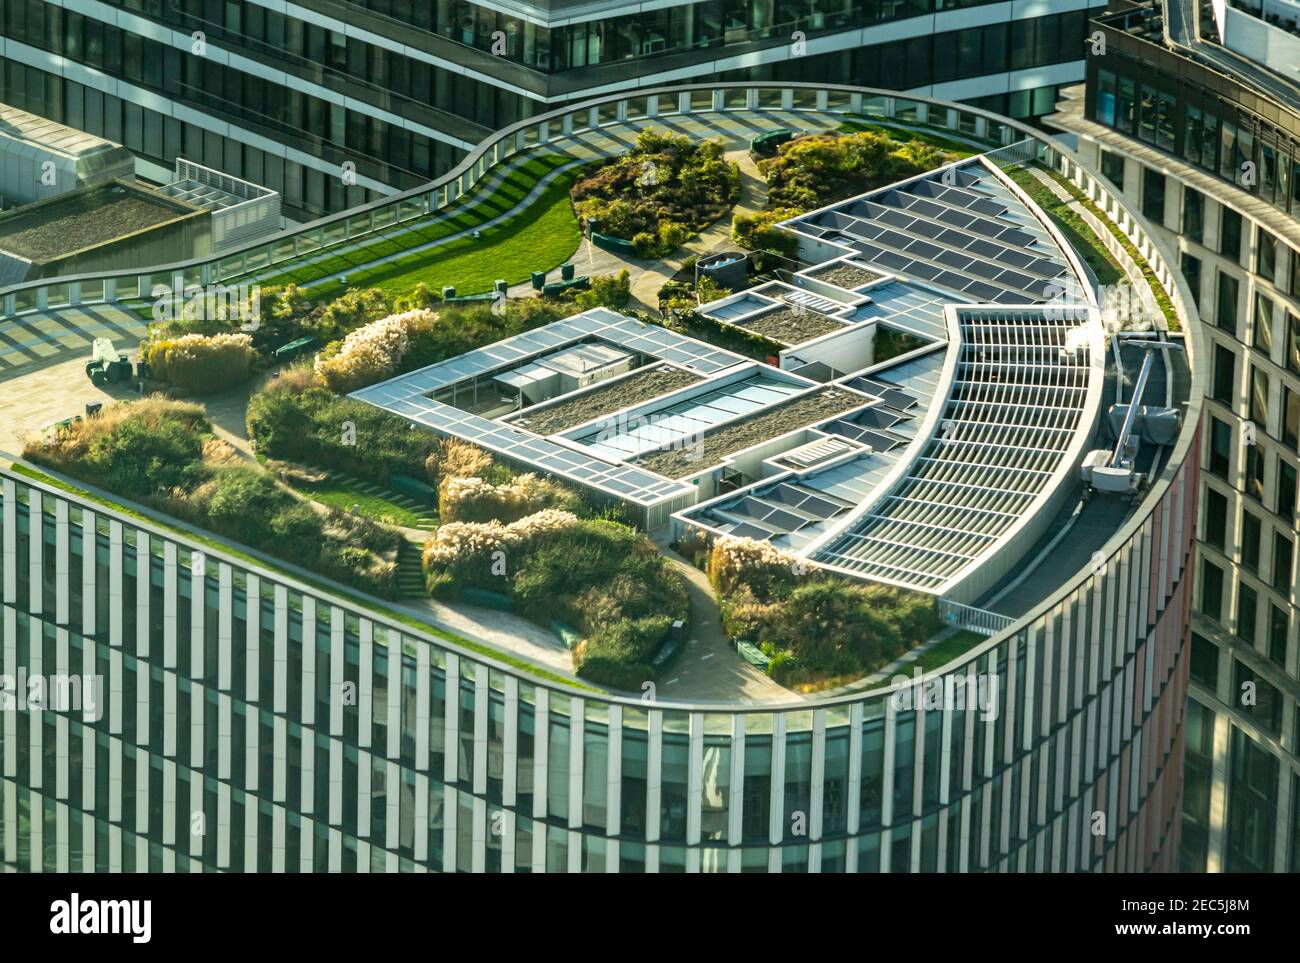 Londra, UK- 15 Dic 2020: Vista dall'alto dell'alto edificio di Wells Fargo con il verde e lussureggiante giardino pensile e pannelli solari a Londra dal re 33 Foto Stock